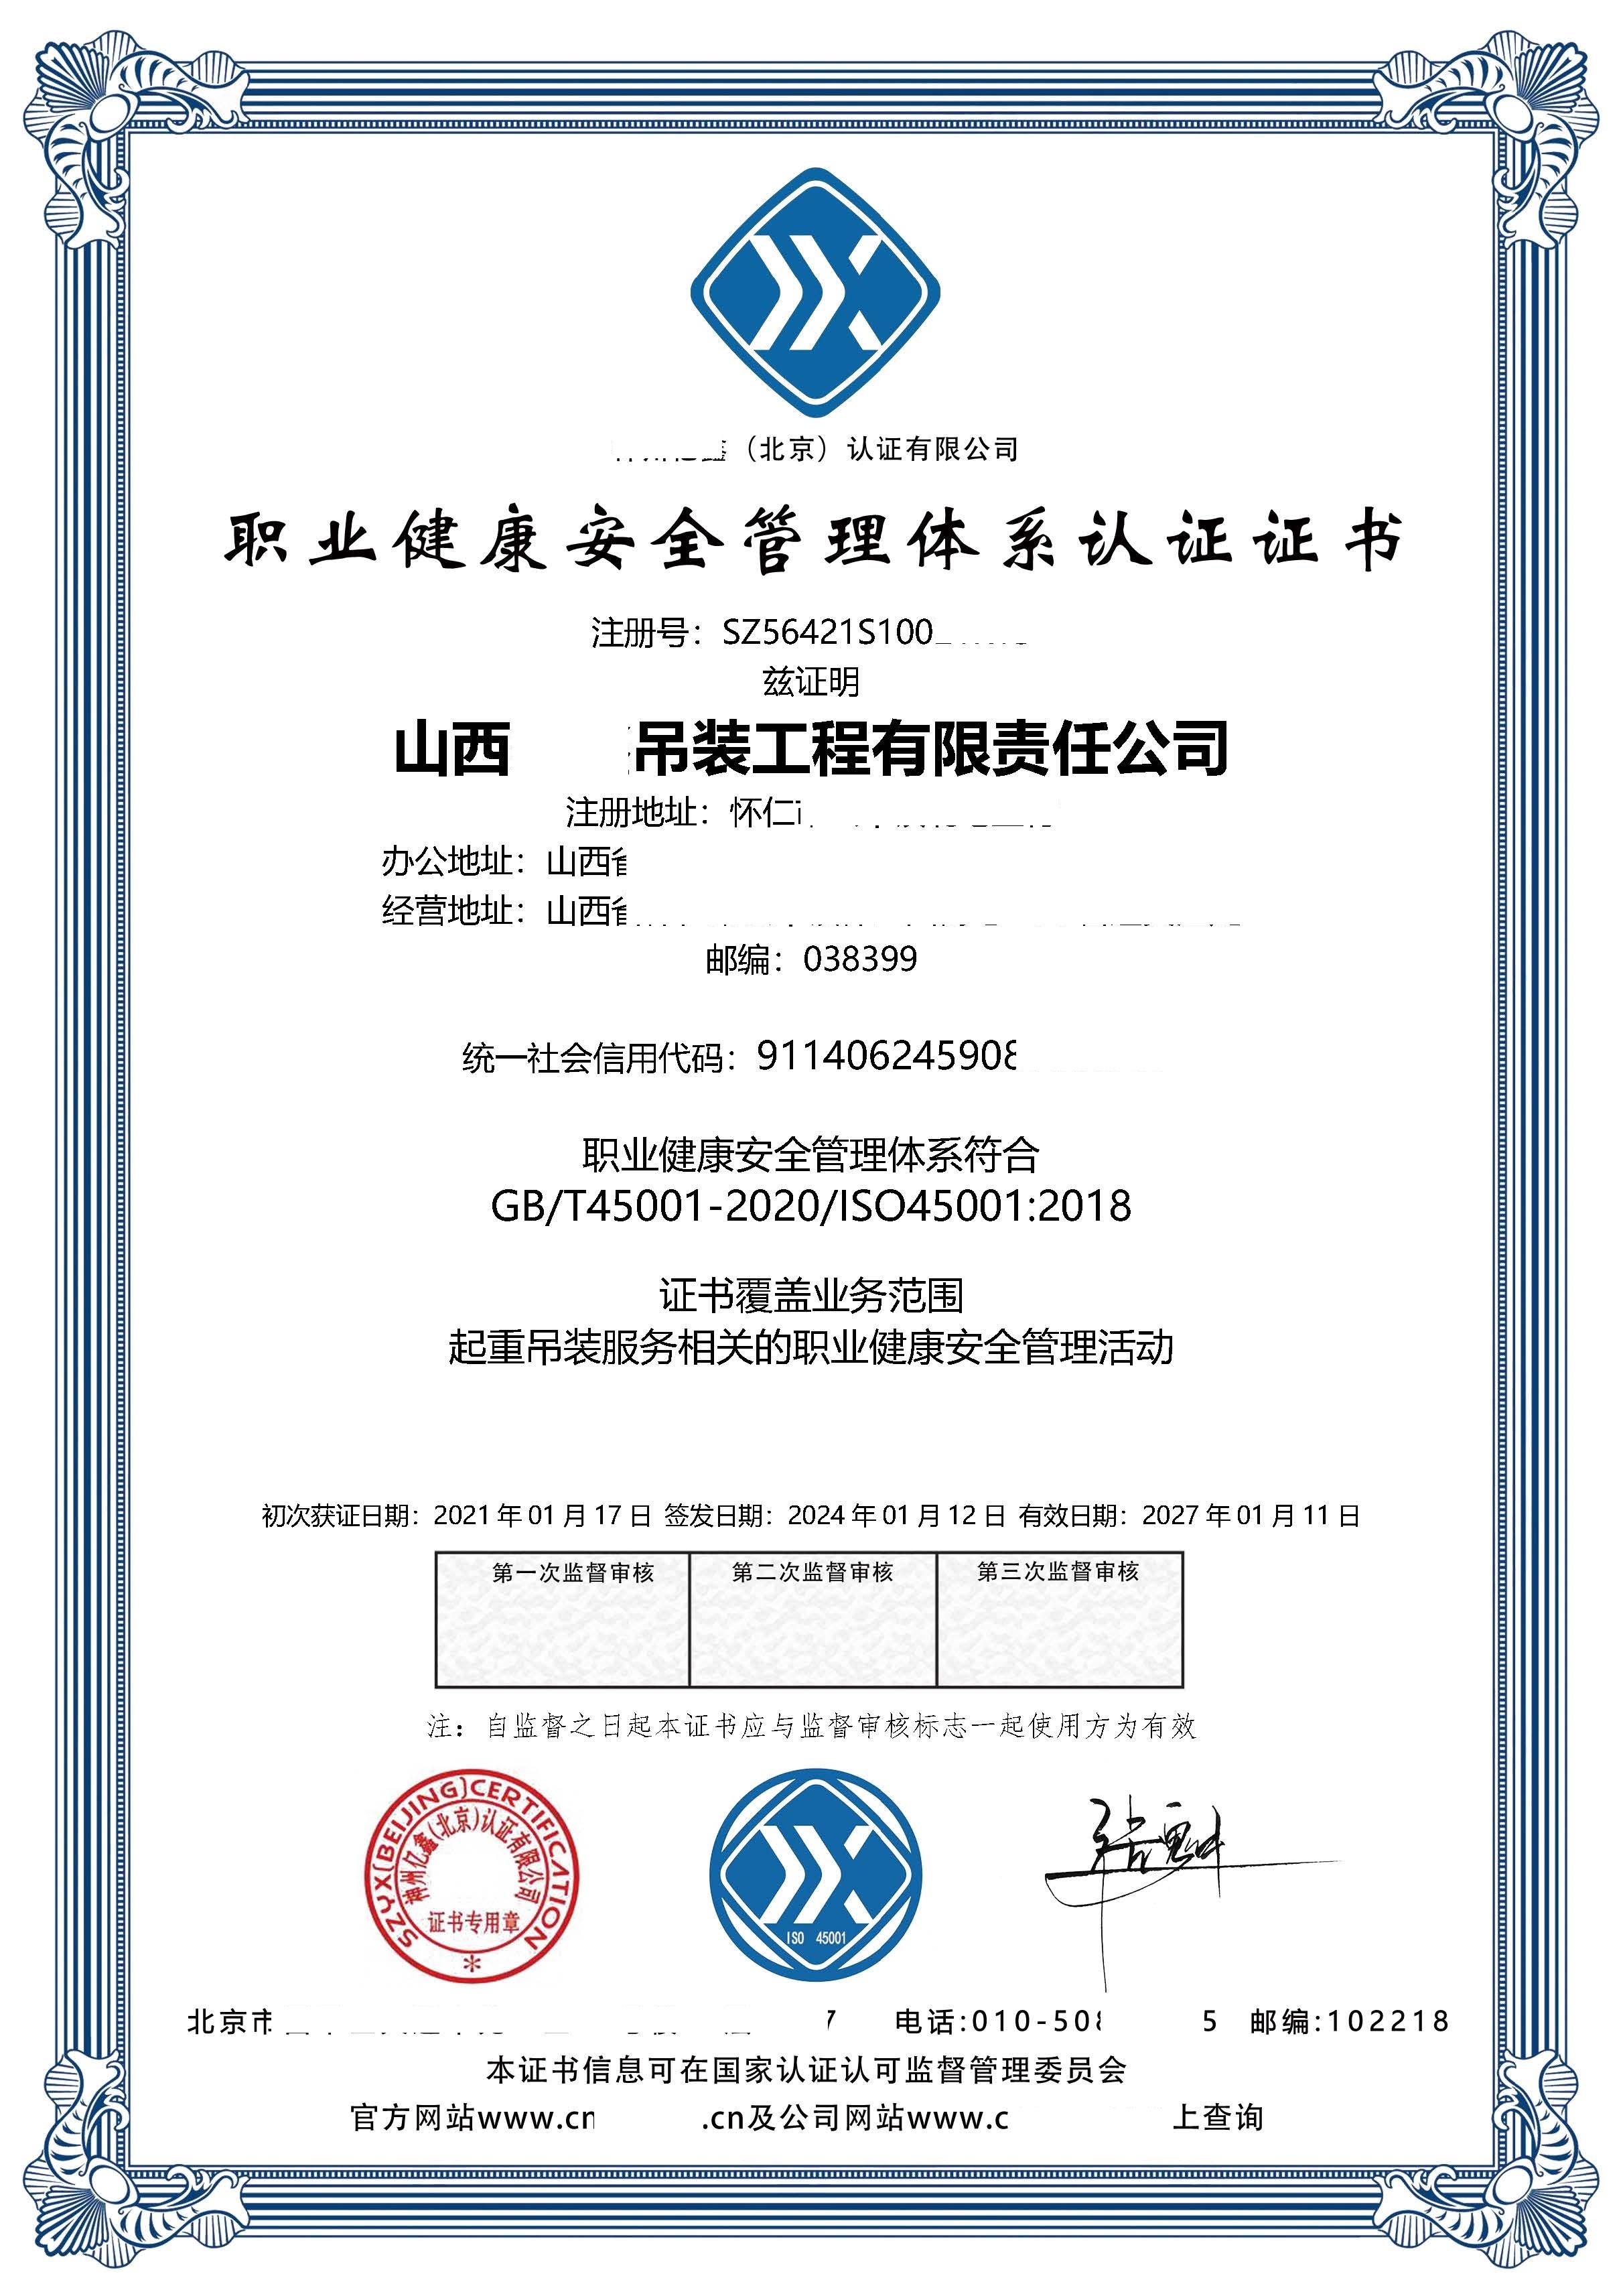 恭喜  山西**吊装工程有限责任公司  获得ISO9001质量、ISO14001环境、ISO45001职业健康安全管理体系认证证书